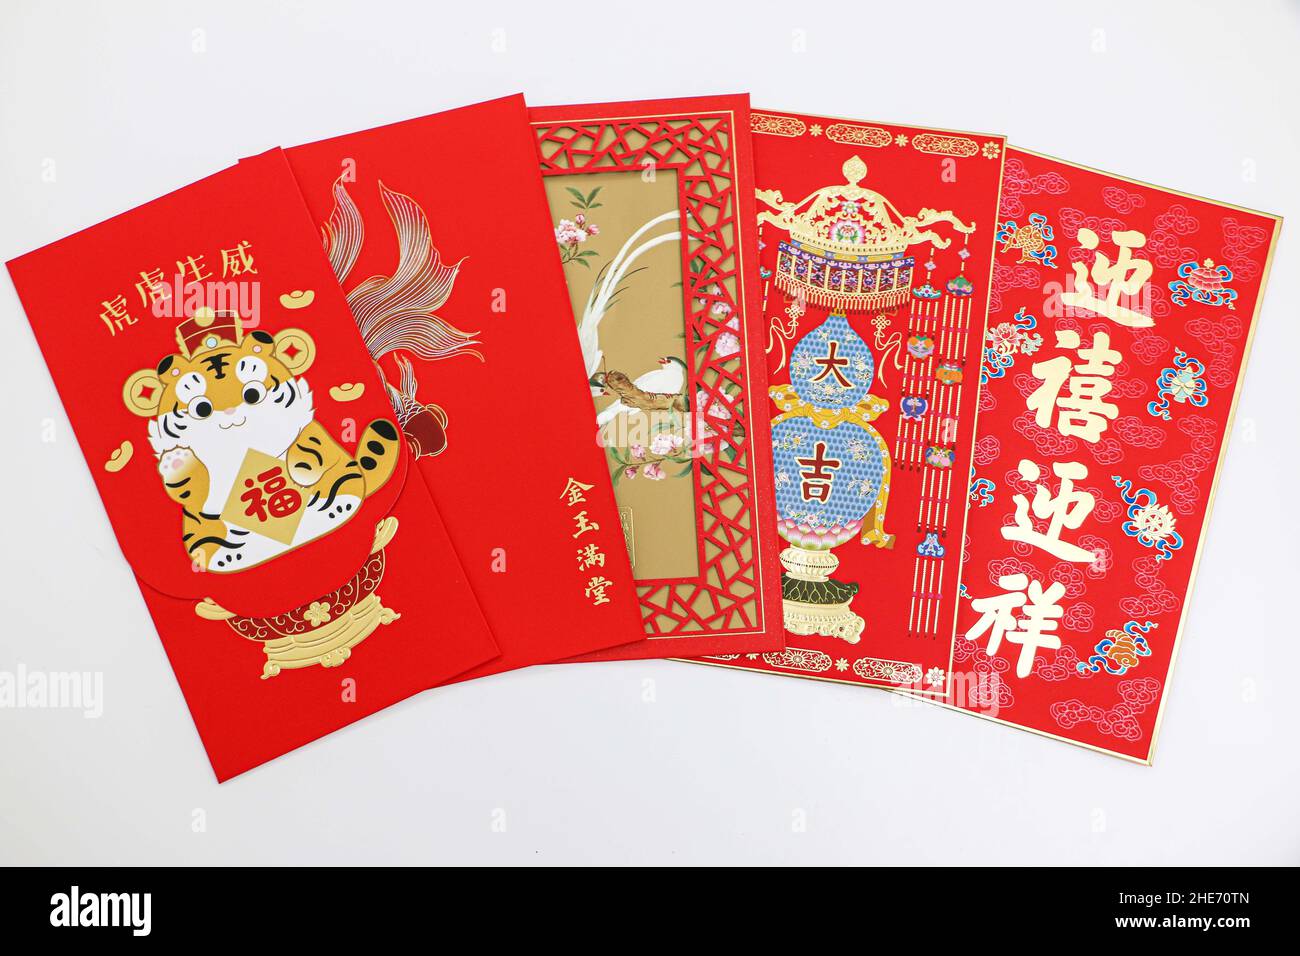 5 Chinesisches Neujahrsglück rote Umschläge (hongbao) mit verschiedenen orientalischen Designs und chinesischen Neujahrsgrüßen, auf weißem Hintergrund Stockfoto